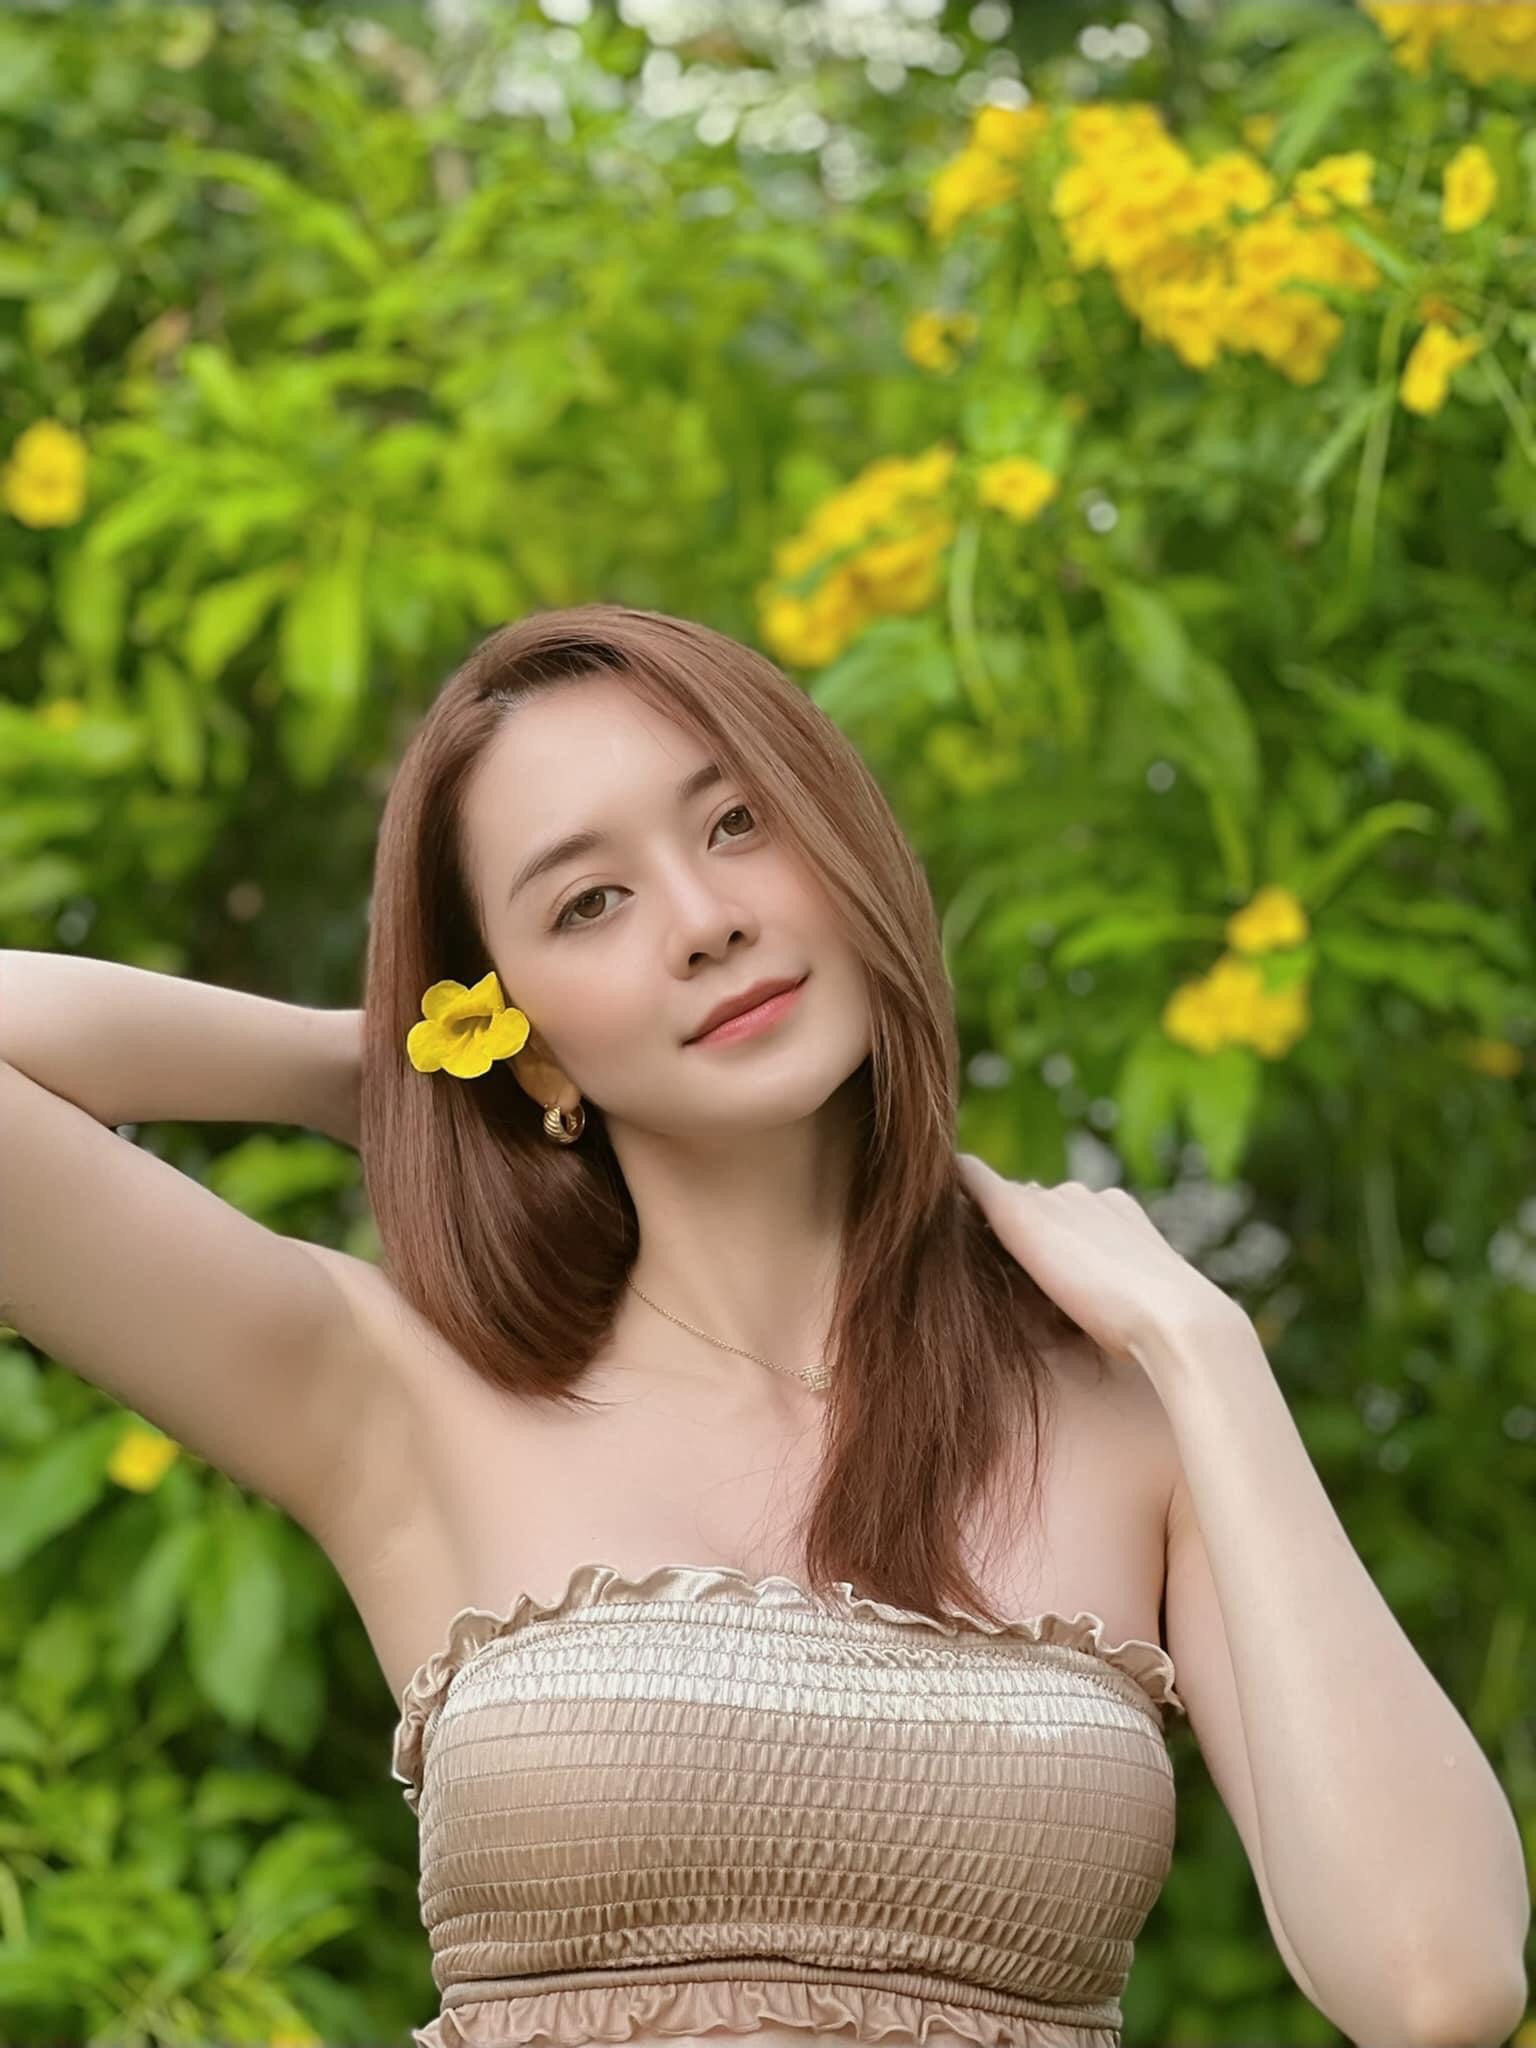 Thiều Bảo Trang đốt cháy mùa hè với bộ ảnh bikini mướt mắt, netizen: 'Mùa xuân hoa nở là vì chị' - Ảnh 1